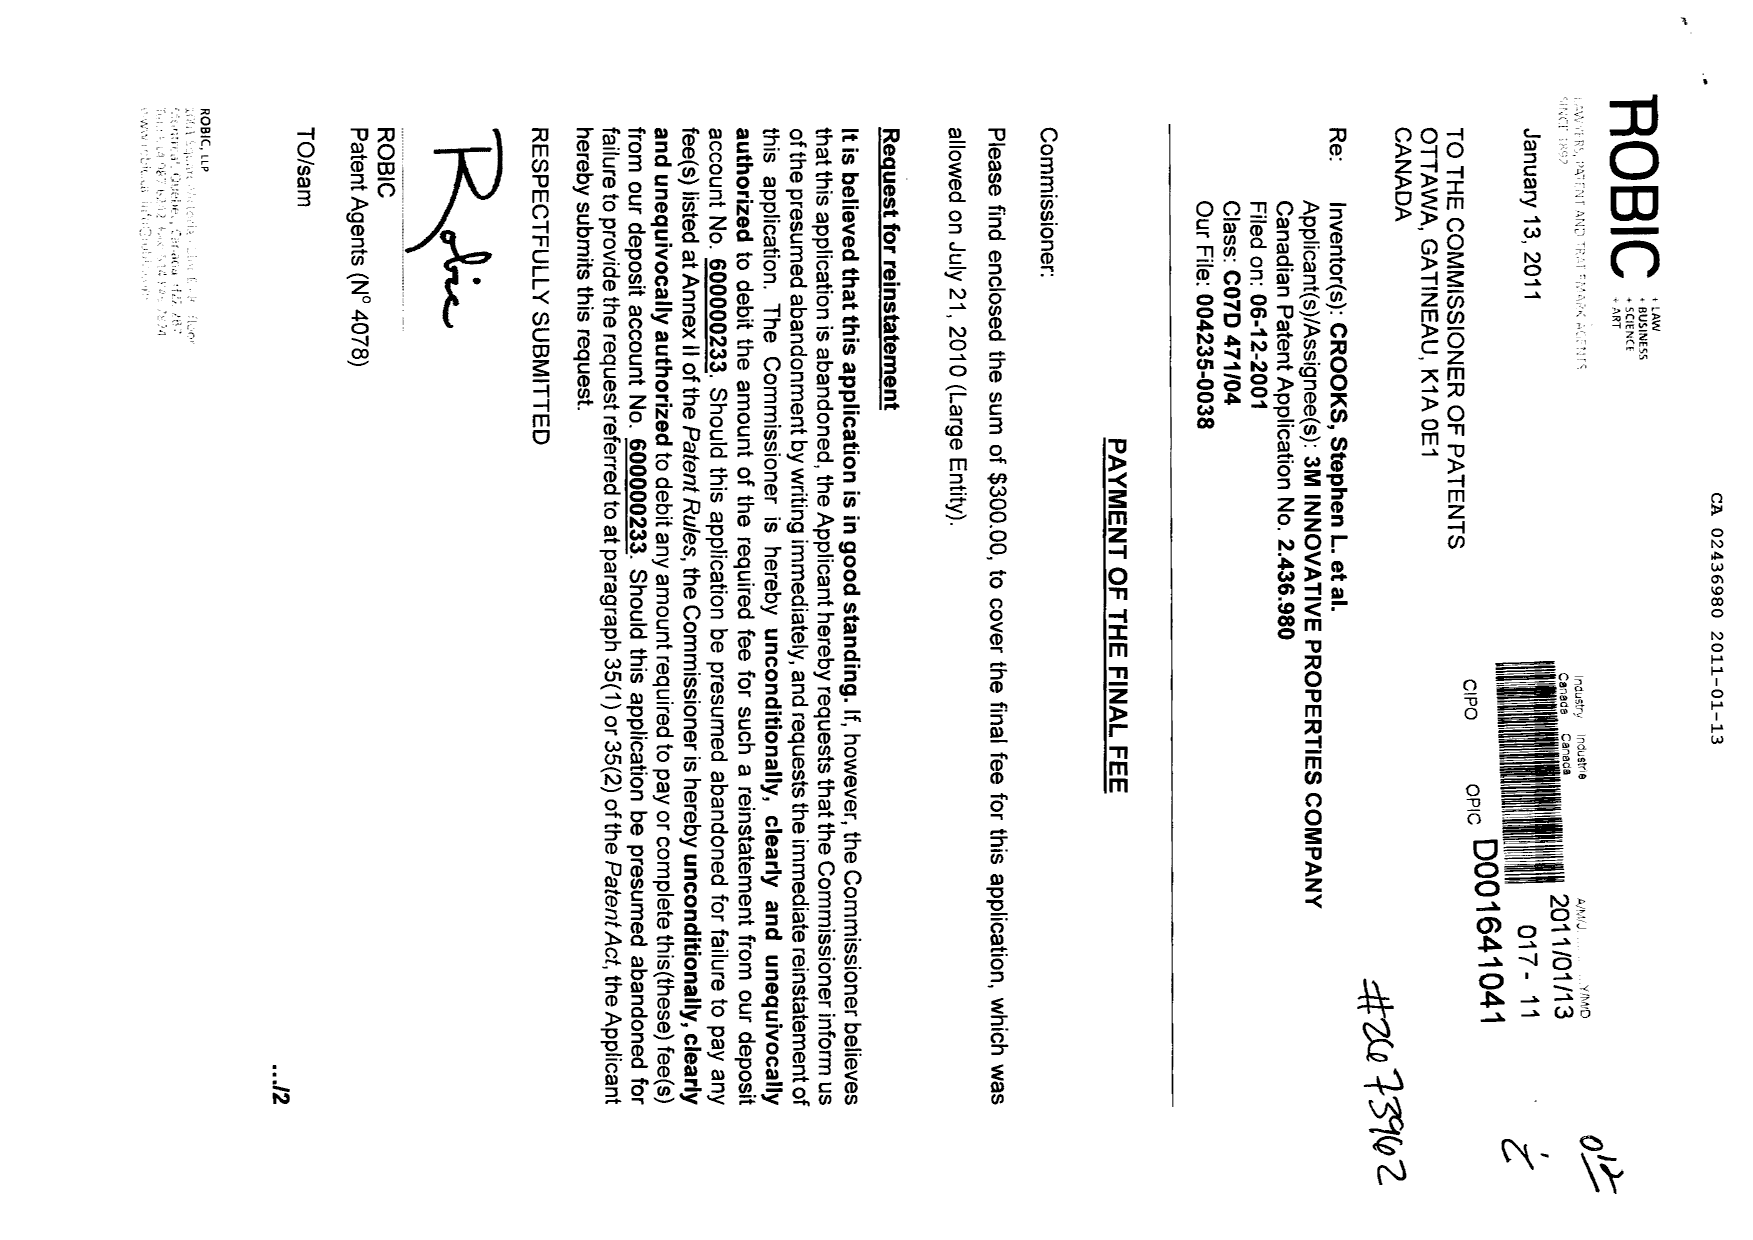 Document de brevet canadien 2436980. Correspondance 20101213. Image 1 de 2